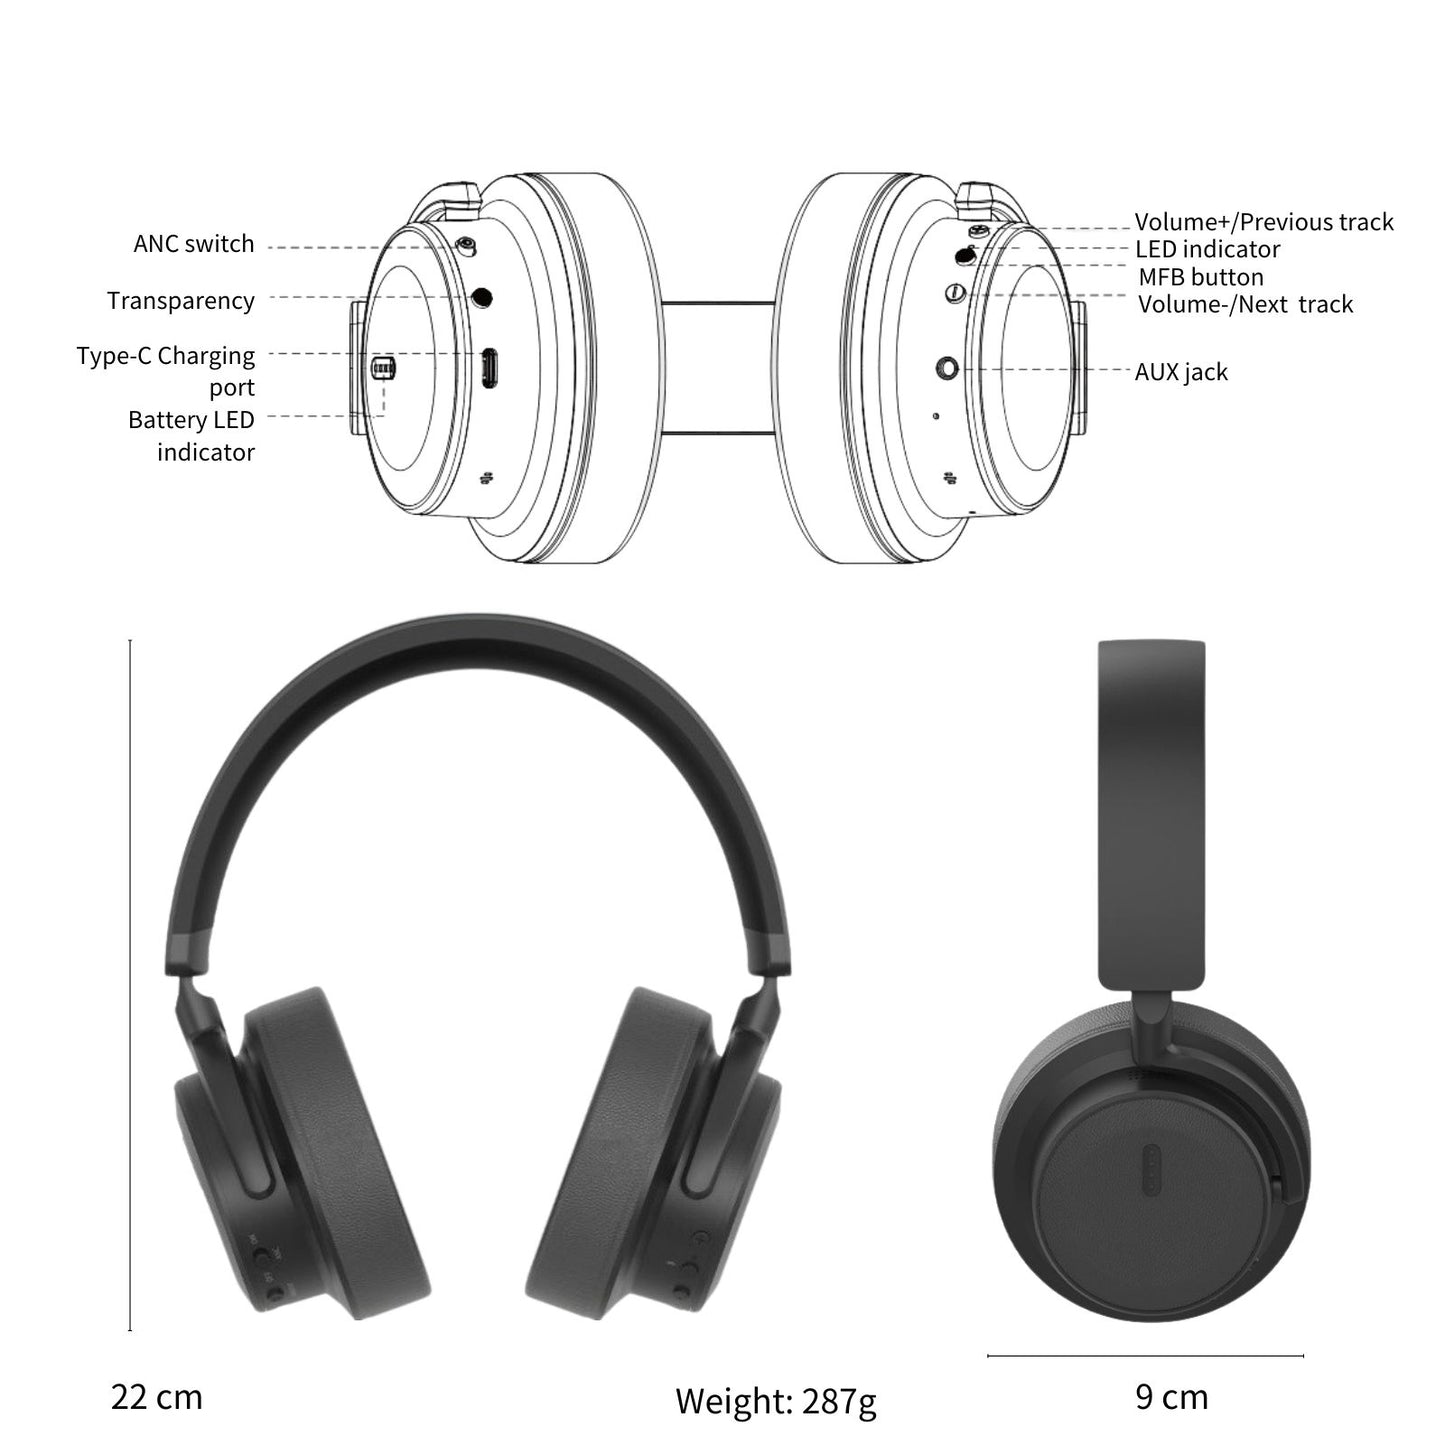 EchoBeatz™ ANC Bluetooth Auracast Wireless Headphones (Bundled with an ULL Transmitter Dongle)